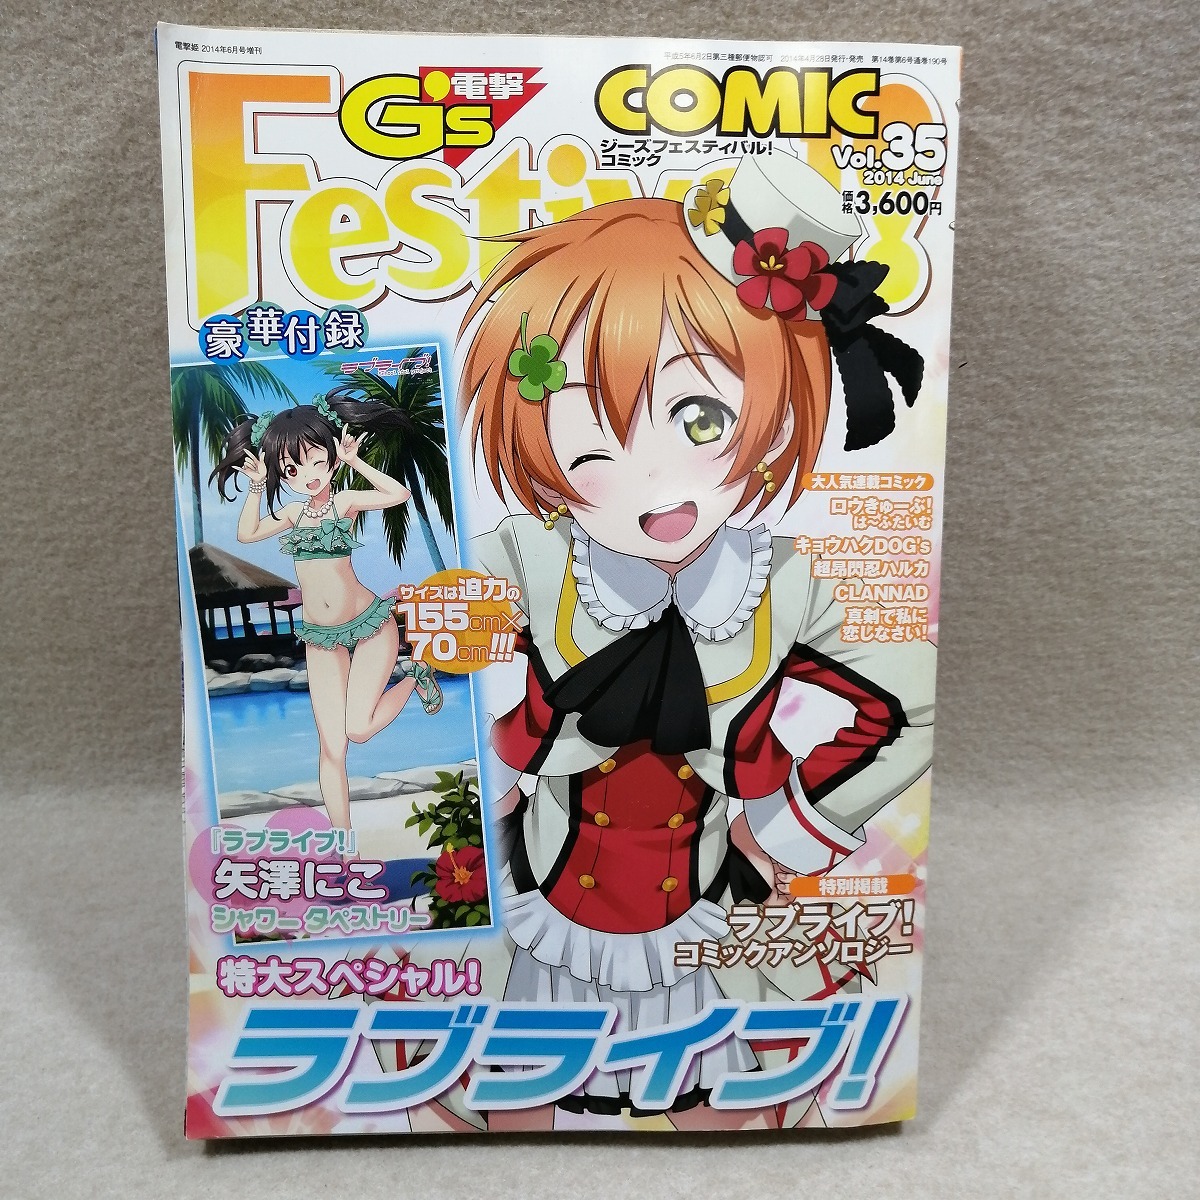 ●○電撃G's Festival! COMIC (ジーズフェスティバルコミック) Vol.35○●